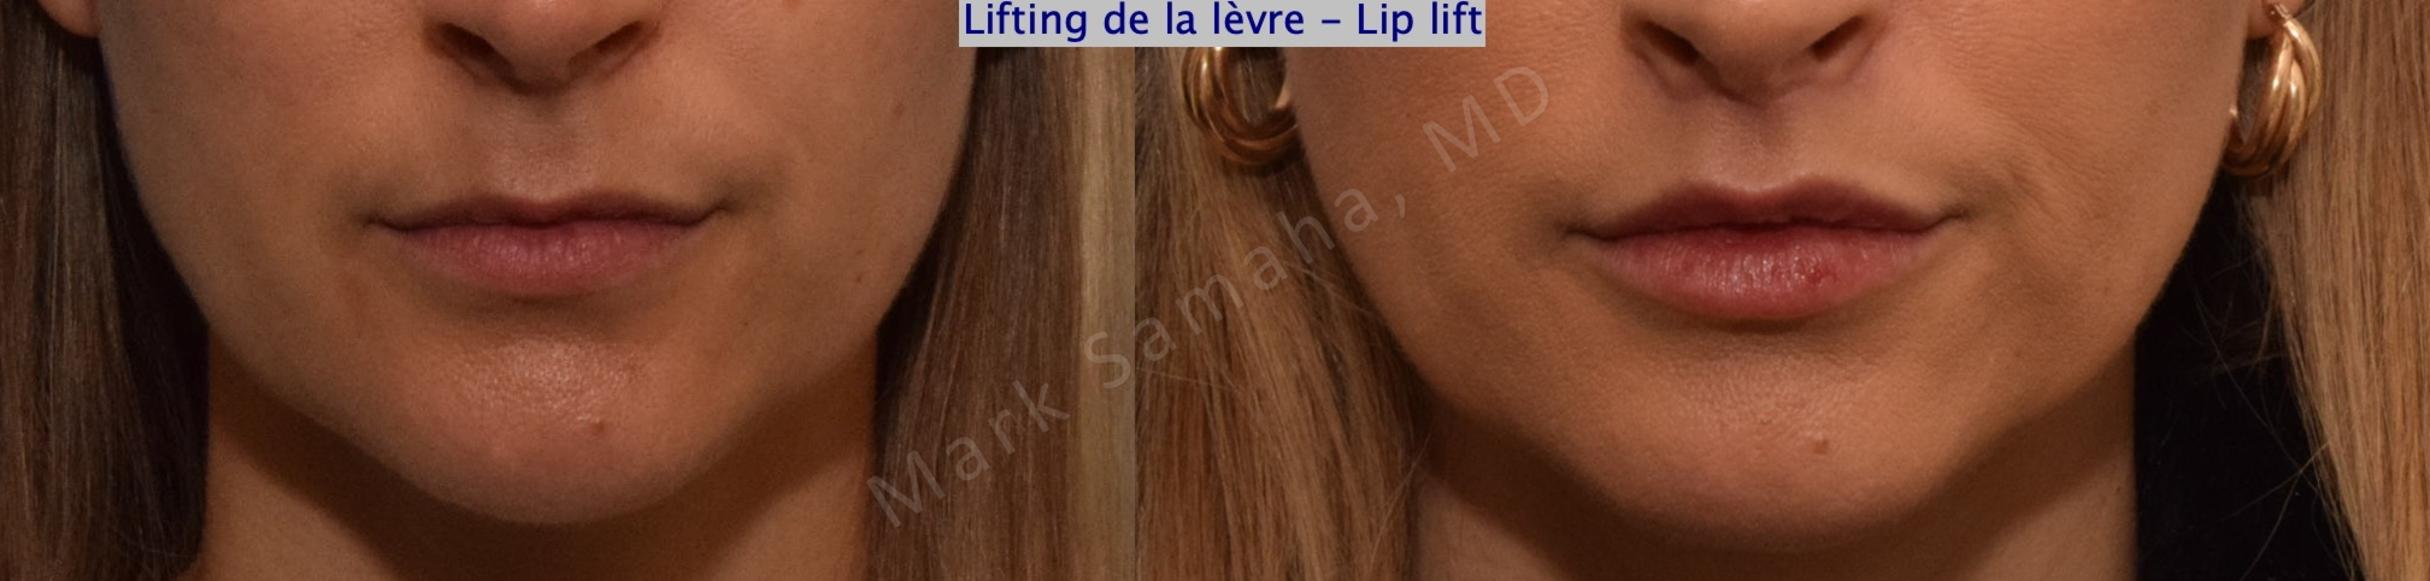 Before & After Lifting de la lèvre supérieure / Lip Lift  Case 199 Front View in Mount Royal, QC